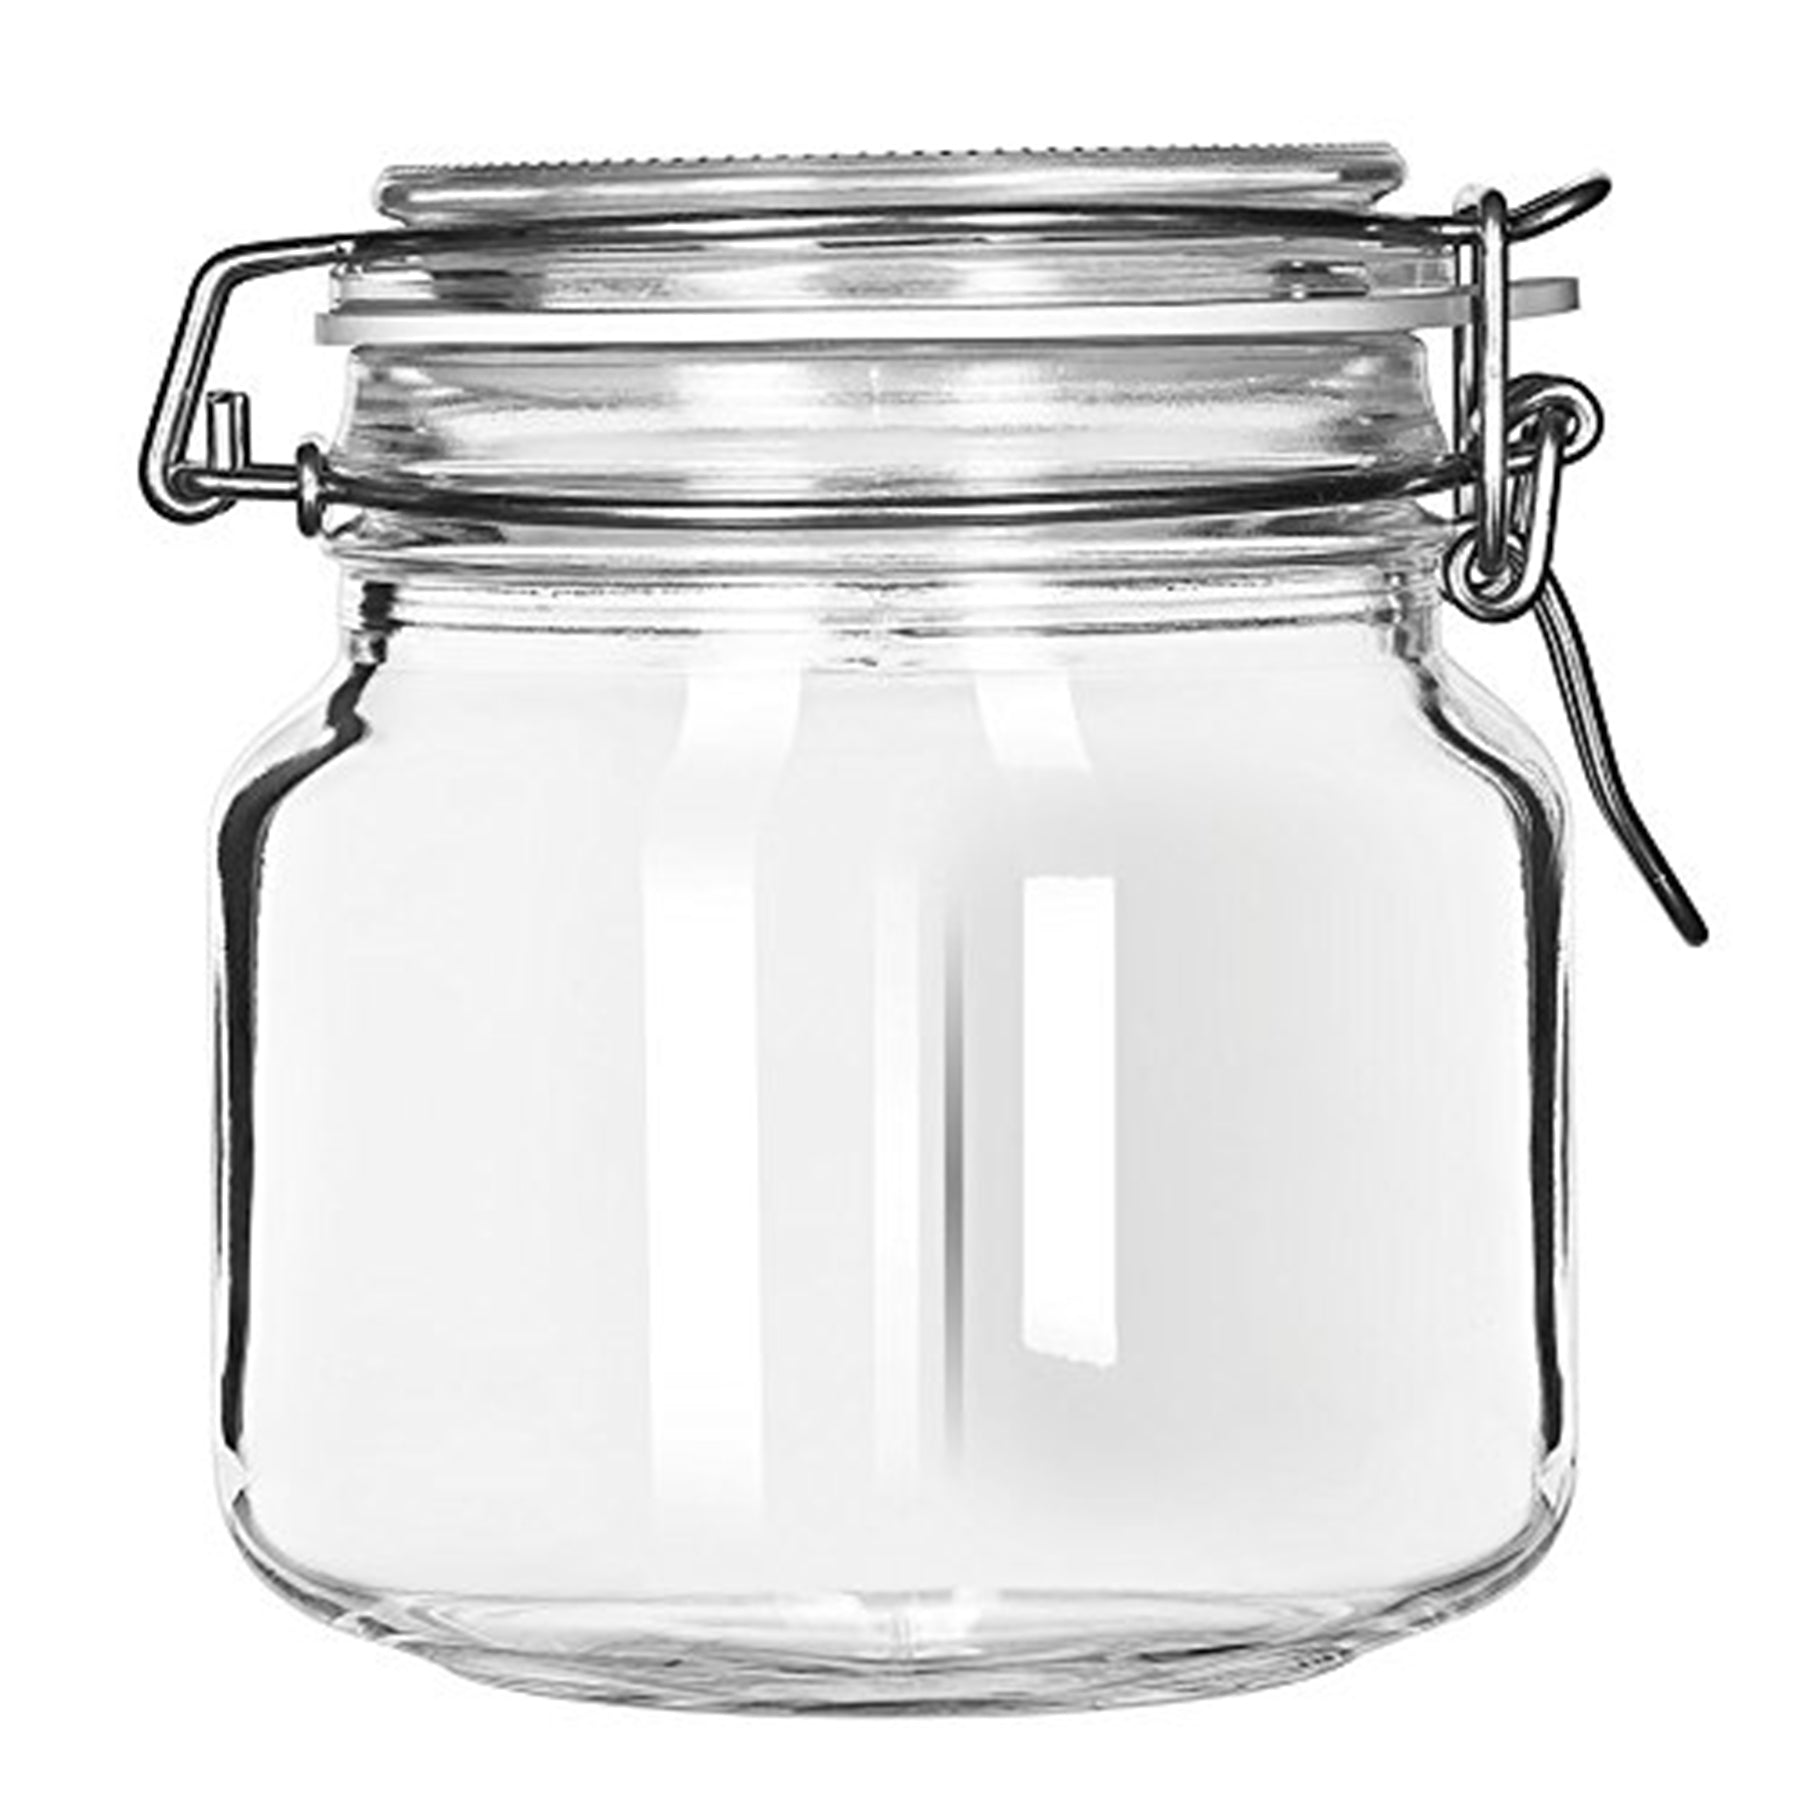 Hermet food jar